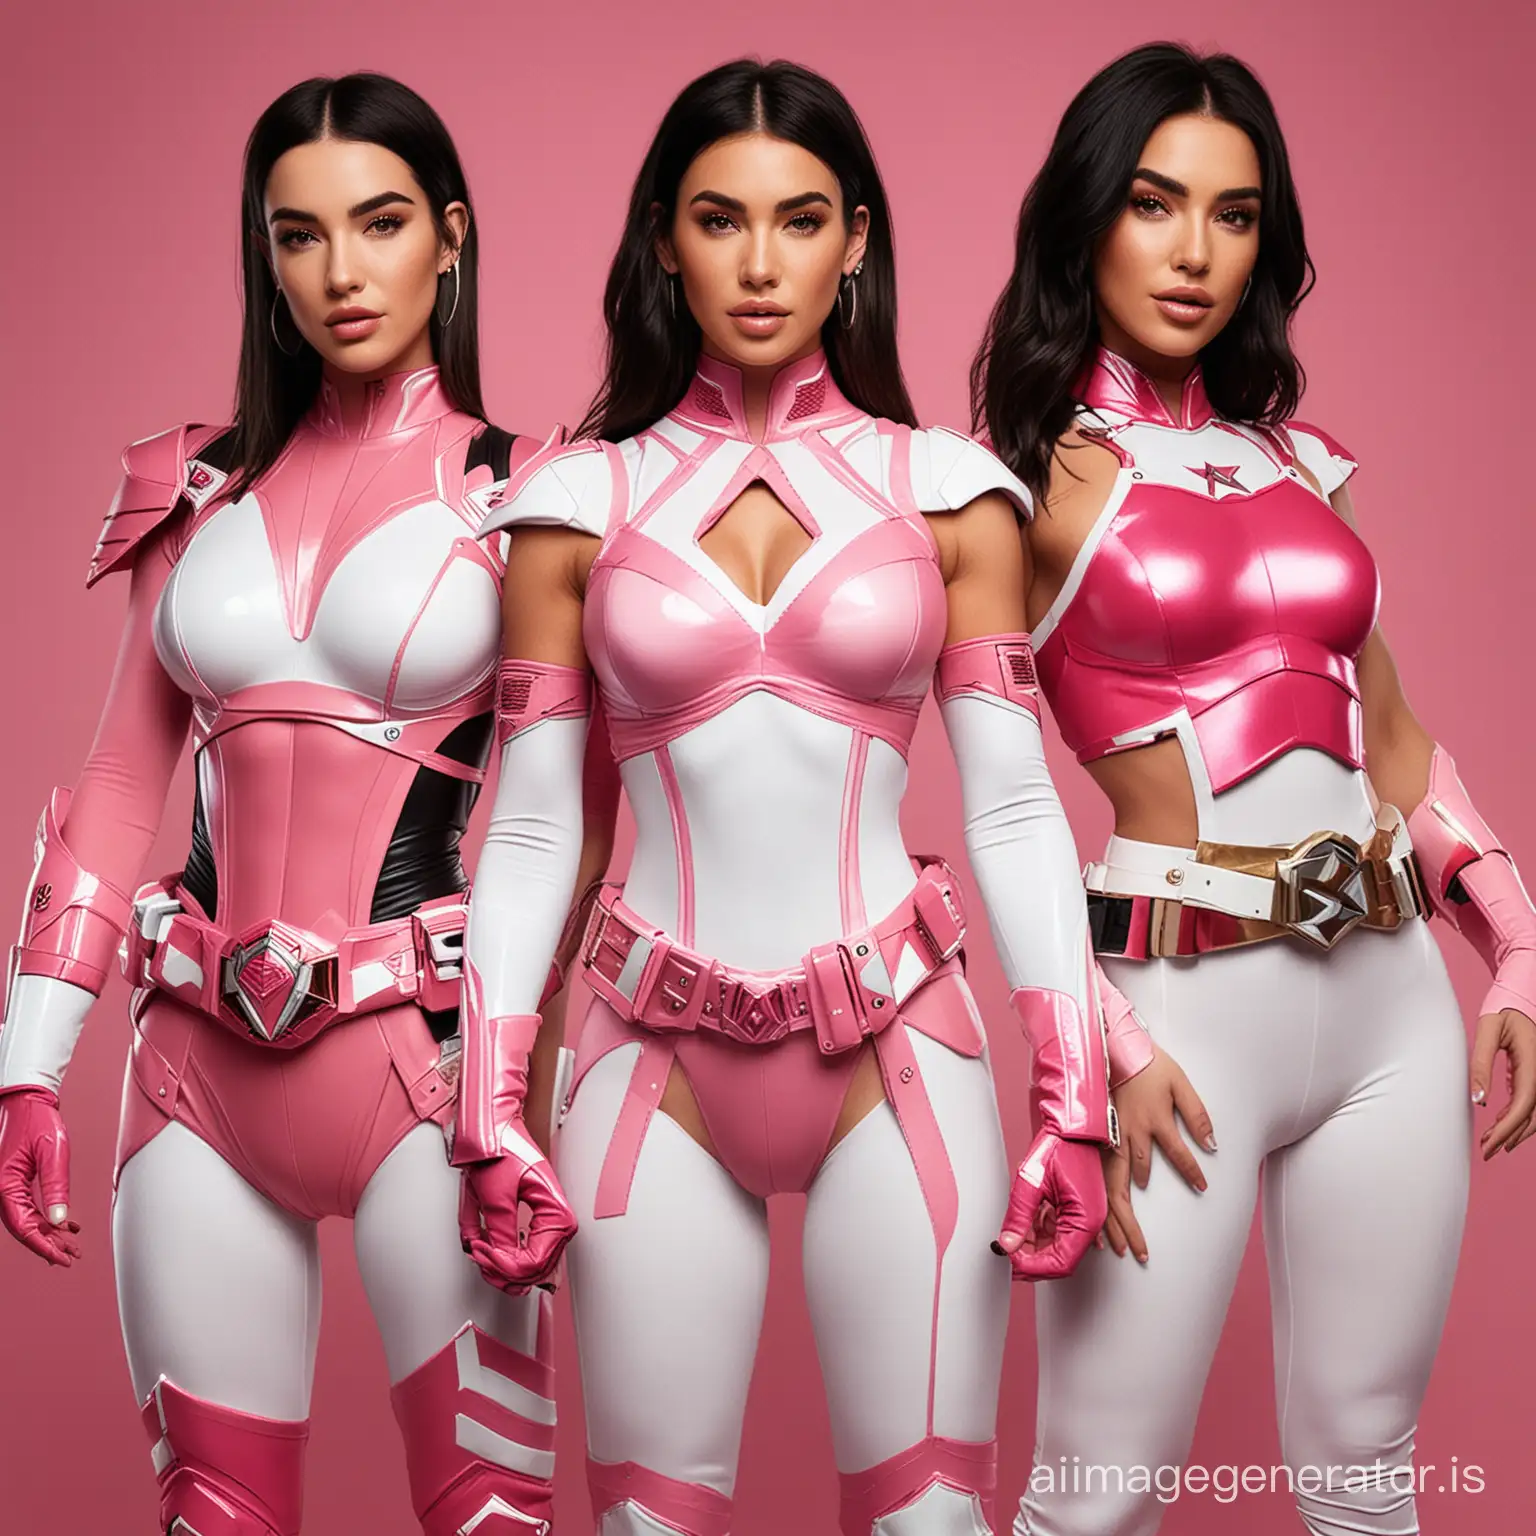 Dua Lipa as red ranger
Megan Fox as pink ranger
Kim Kardashian as white ranger
